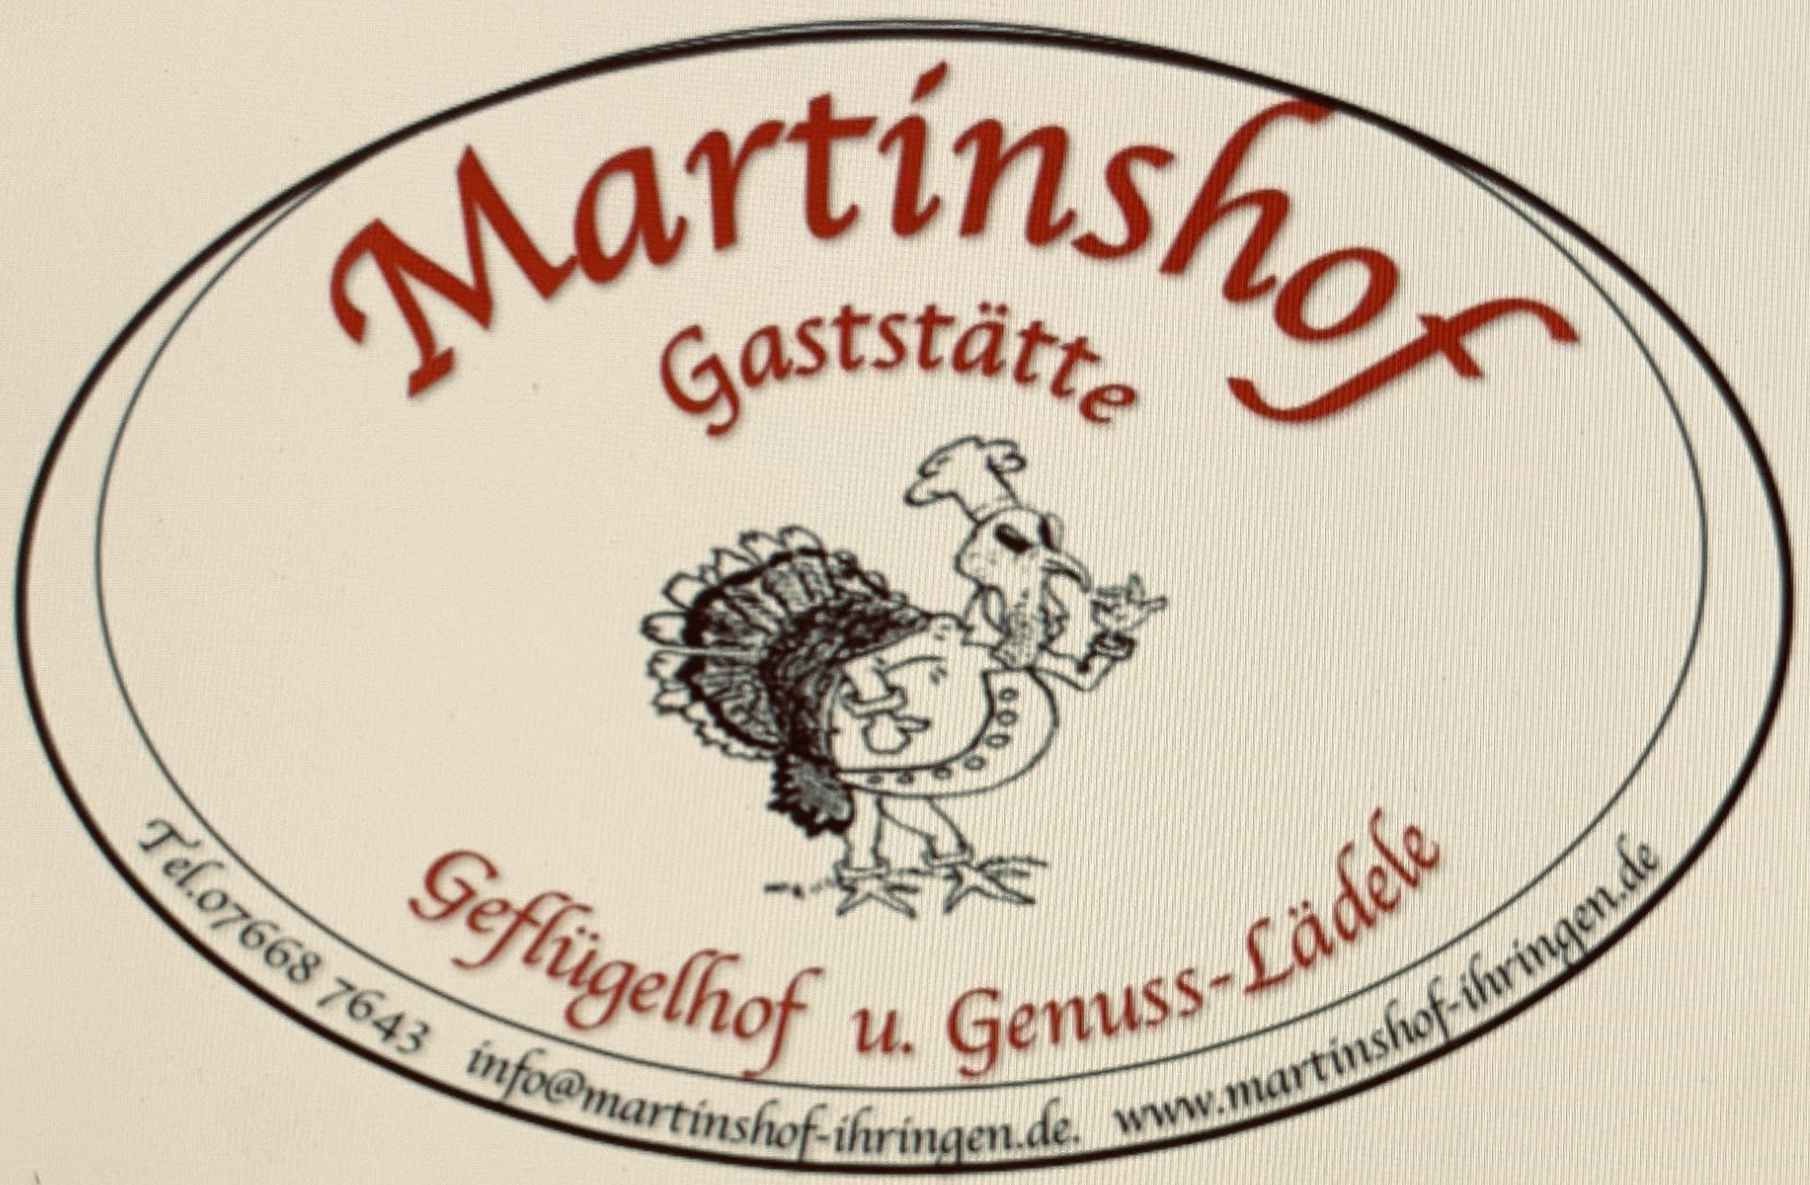 (c) Martinshof-ihringen.de